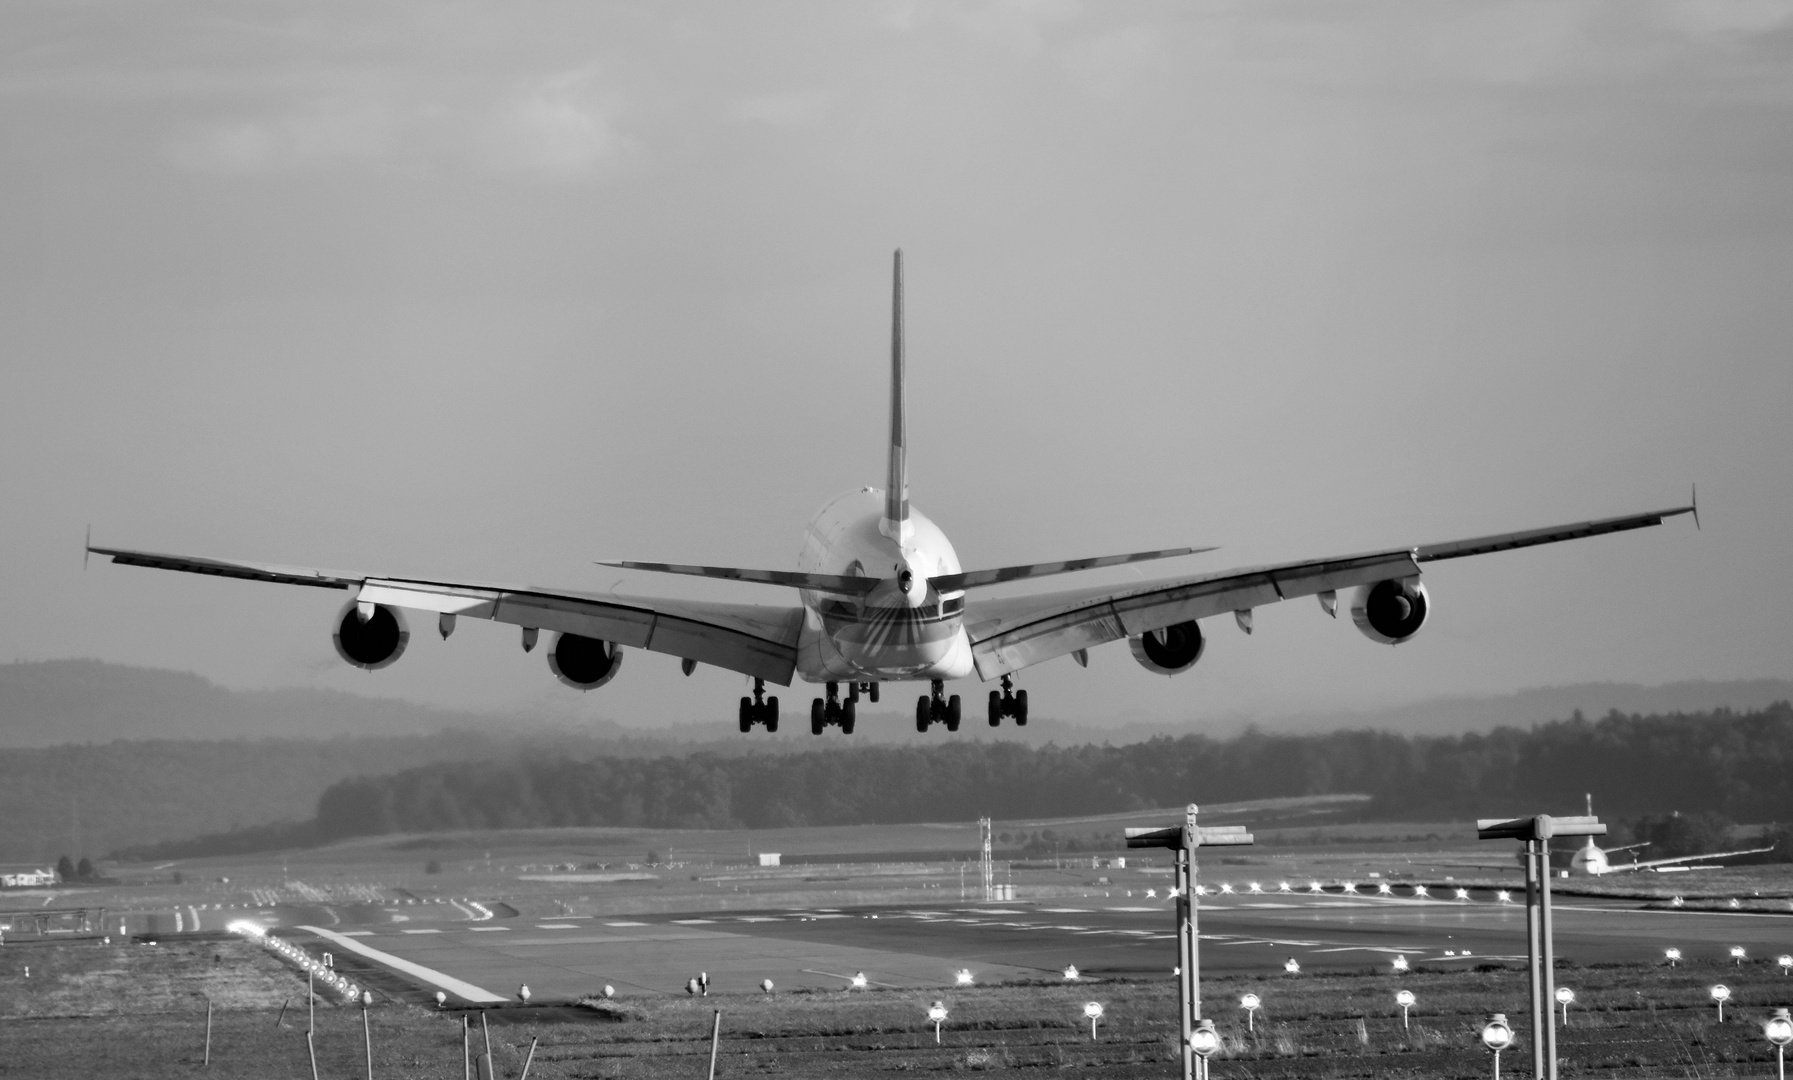 Airbus A380 - Landung; Zürich Kloten